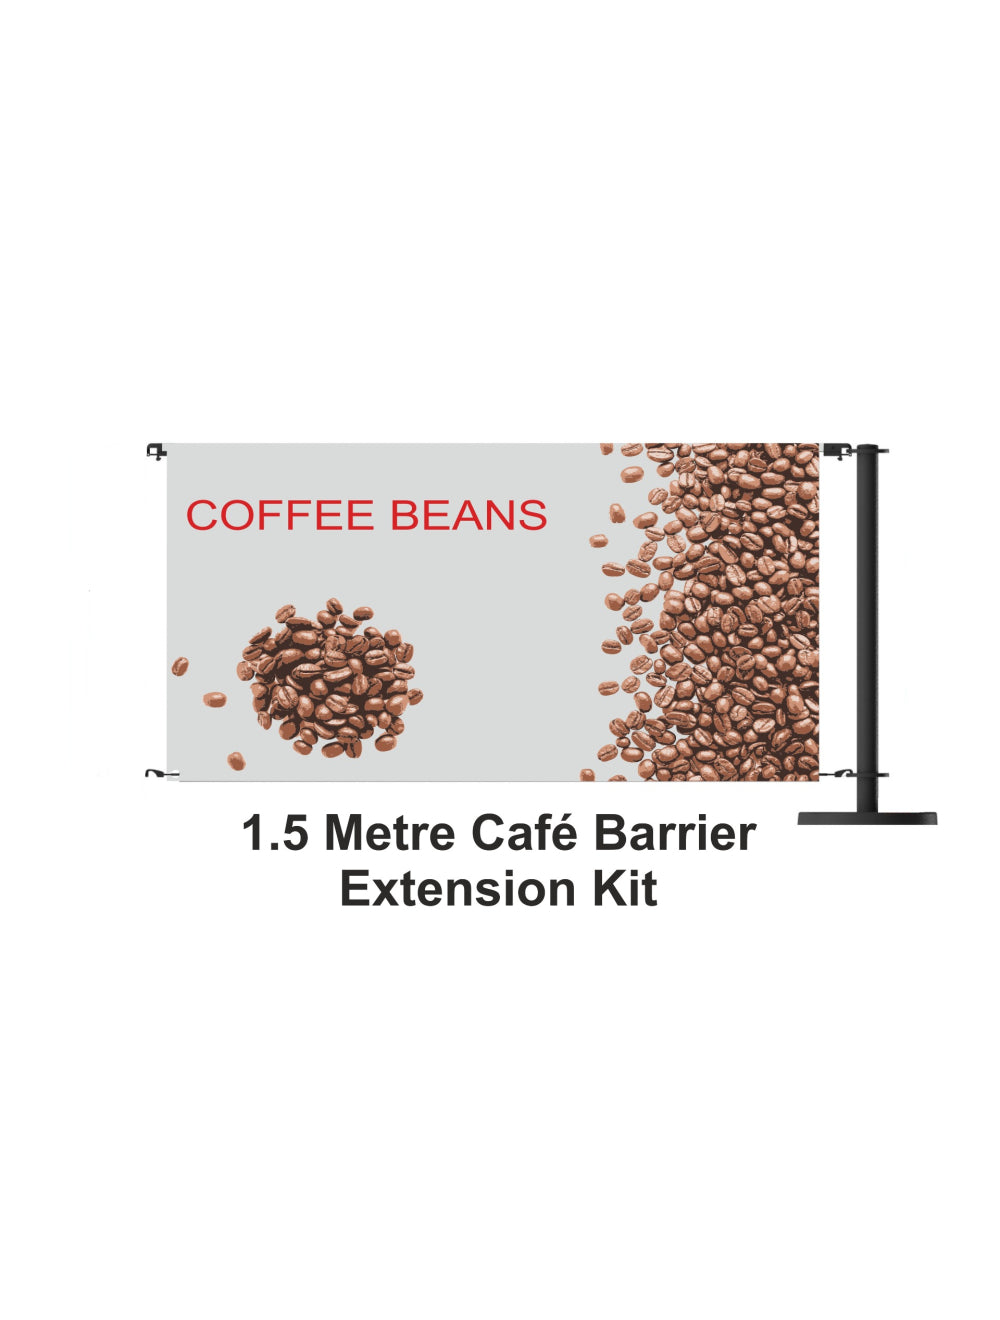 Komplet za proširenje barijera za kafiće od 1,5 metara